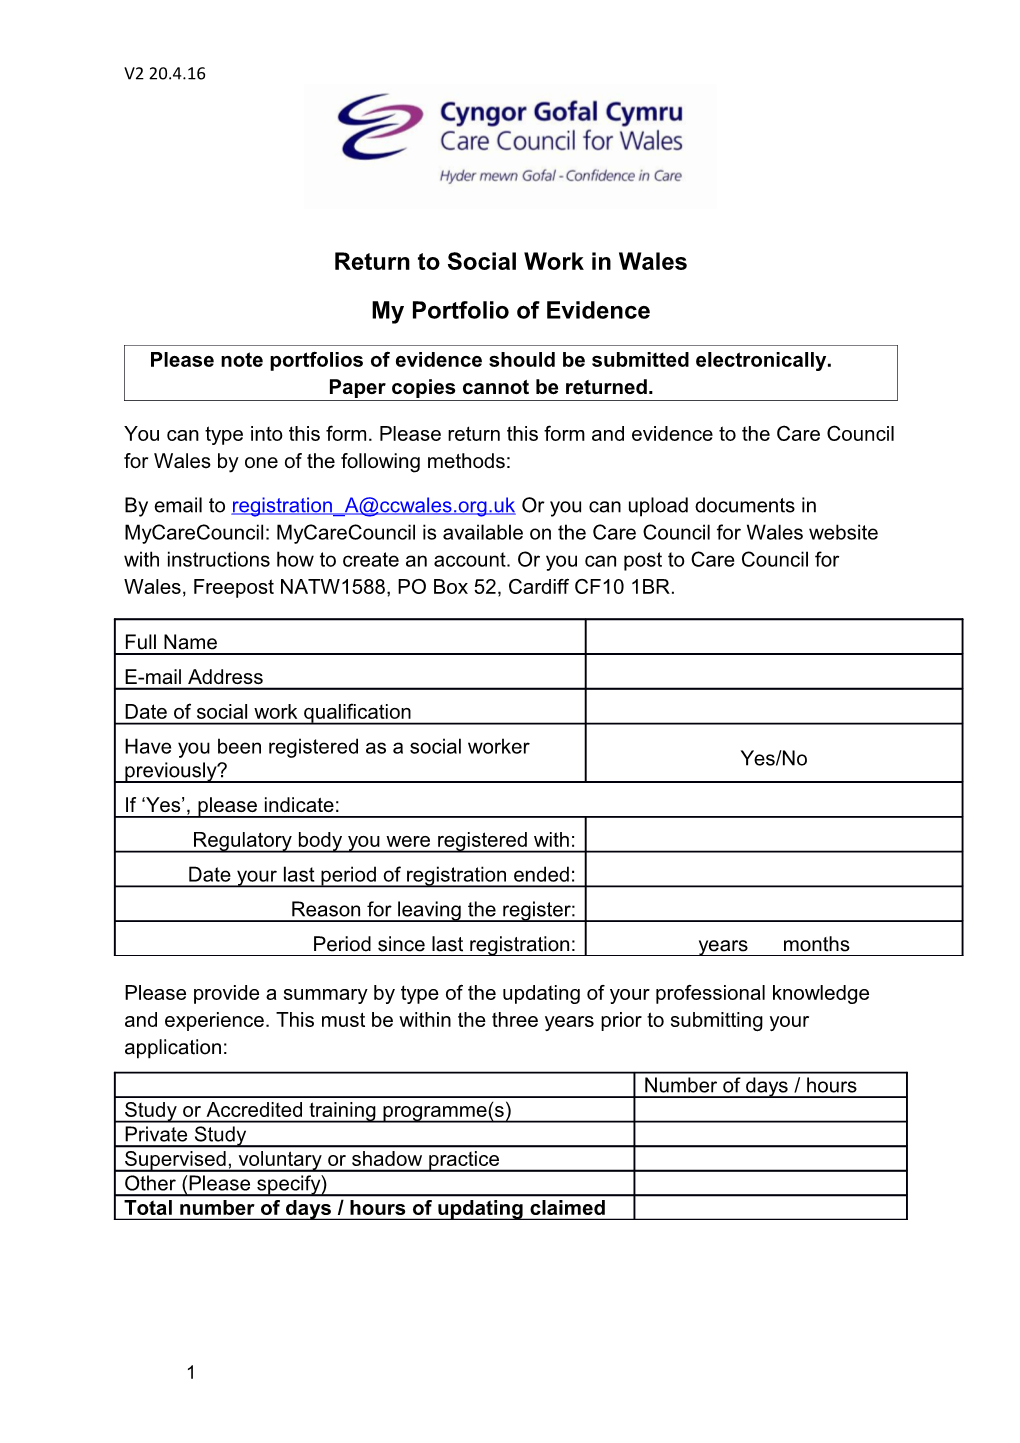 Return to Social Work in Wales